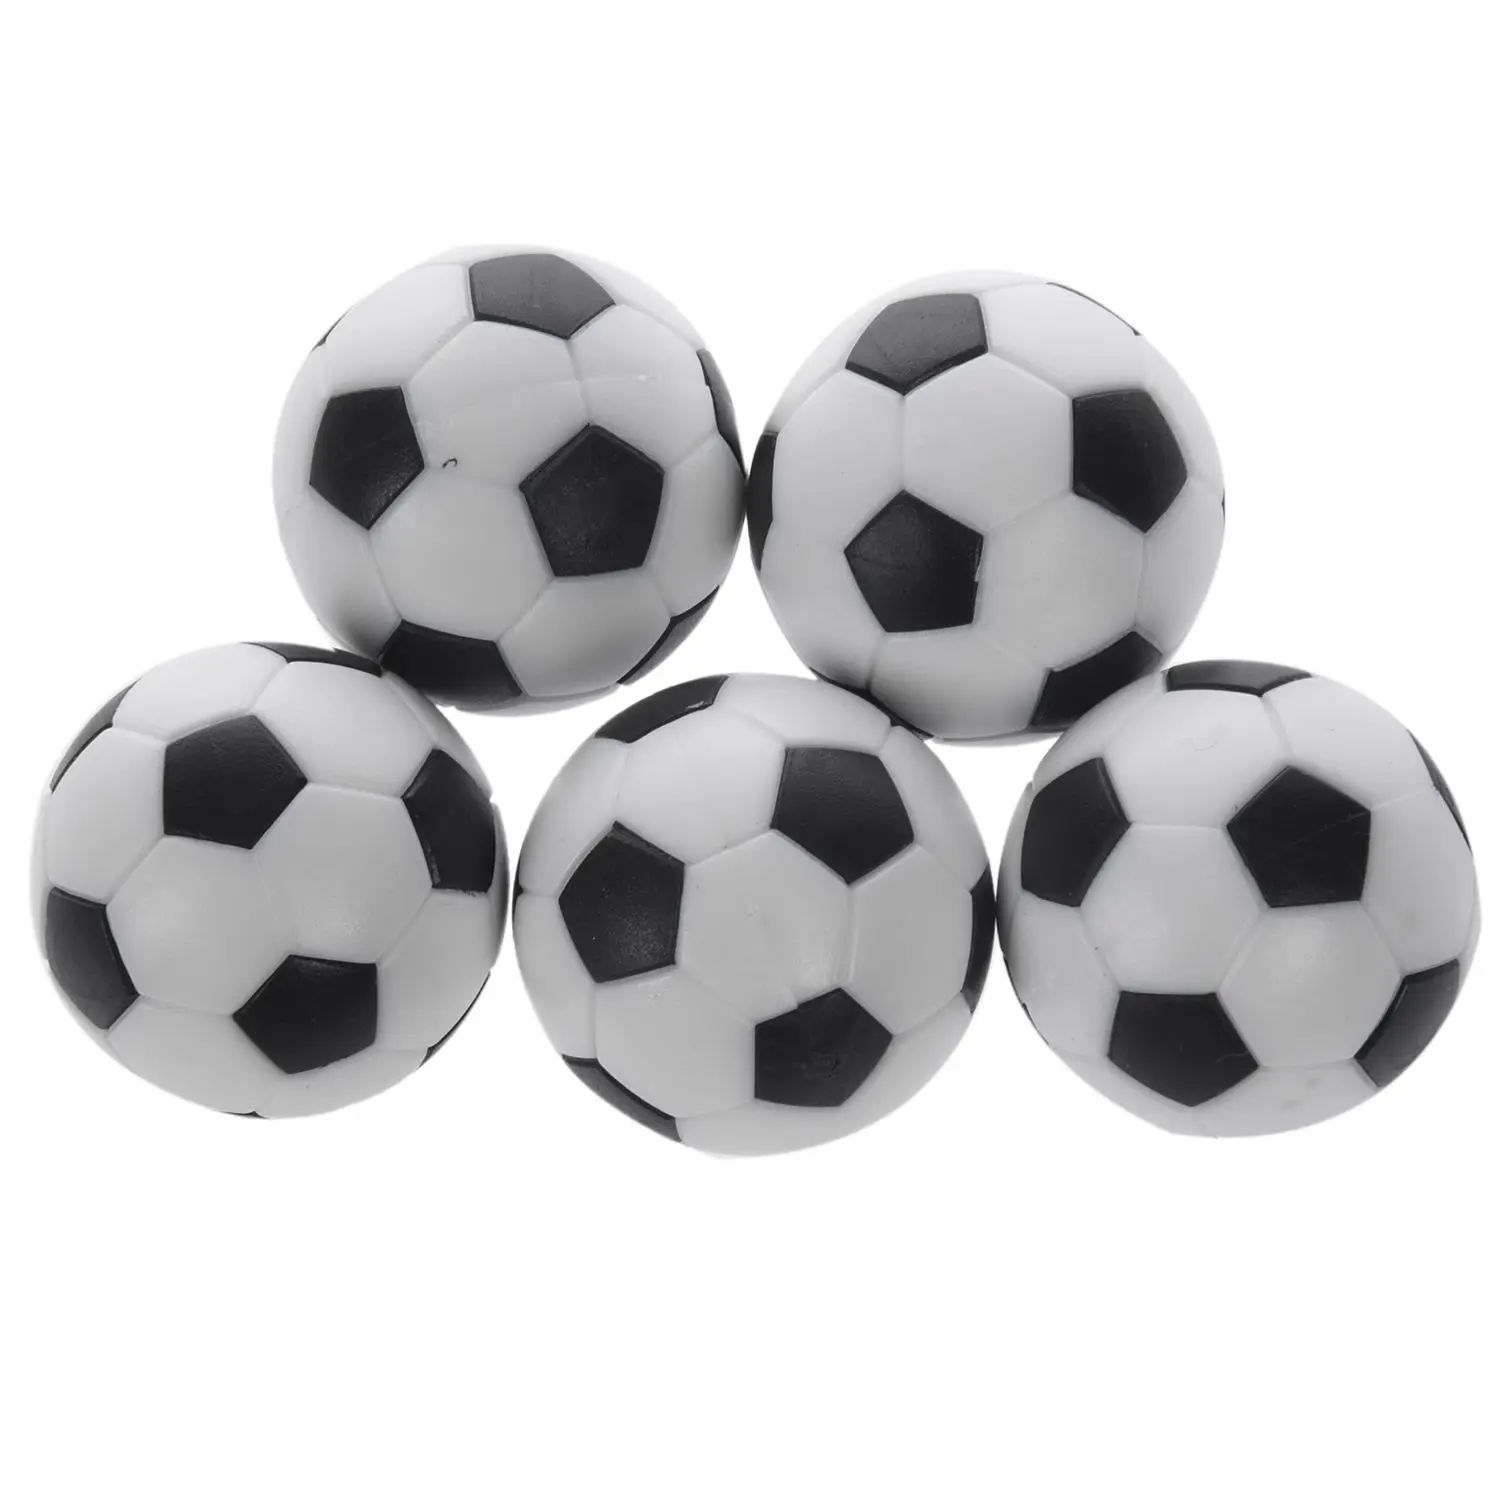 5x Пластиковый 32-мм футбольный мяч для настольного футбола в помещении Заменить черный + белый